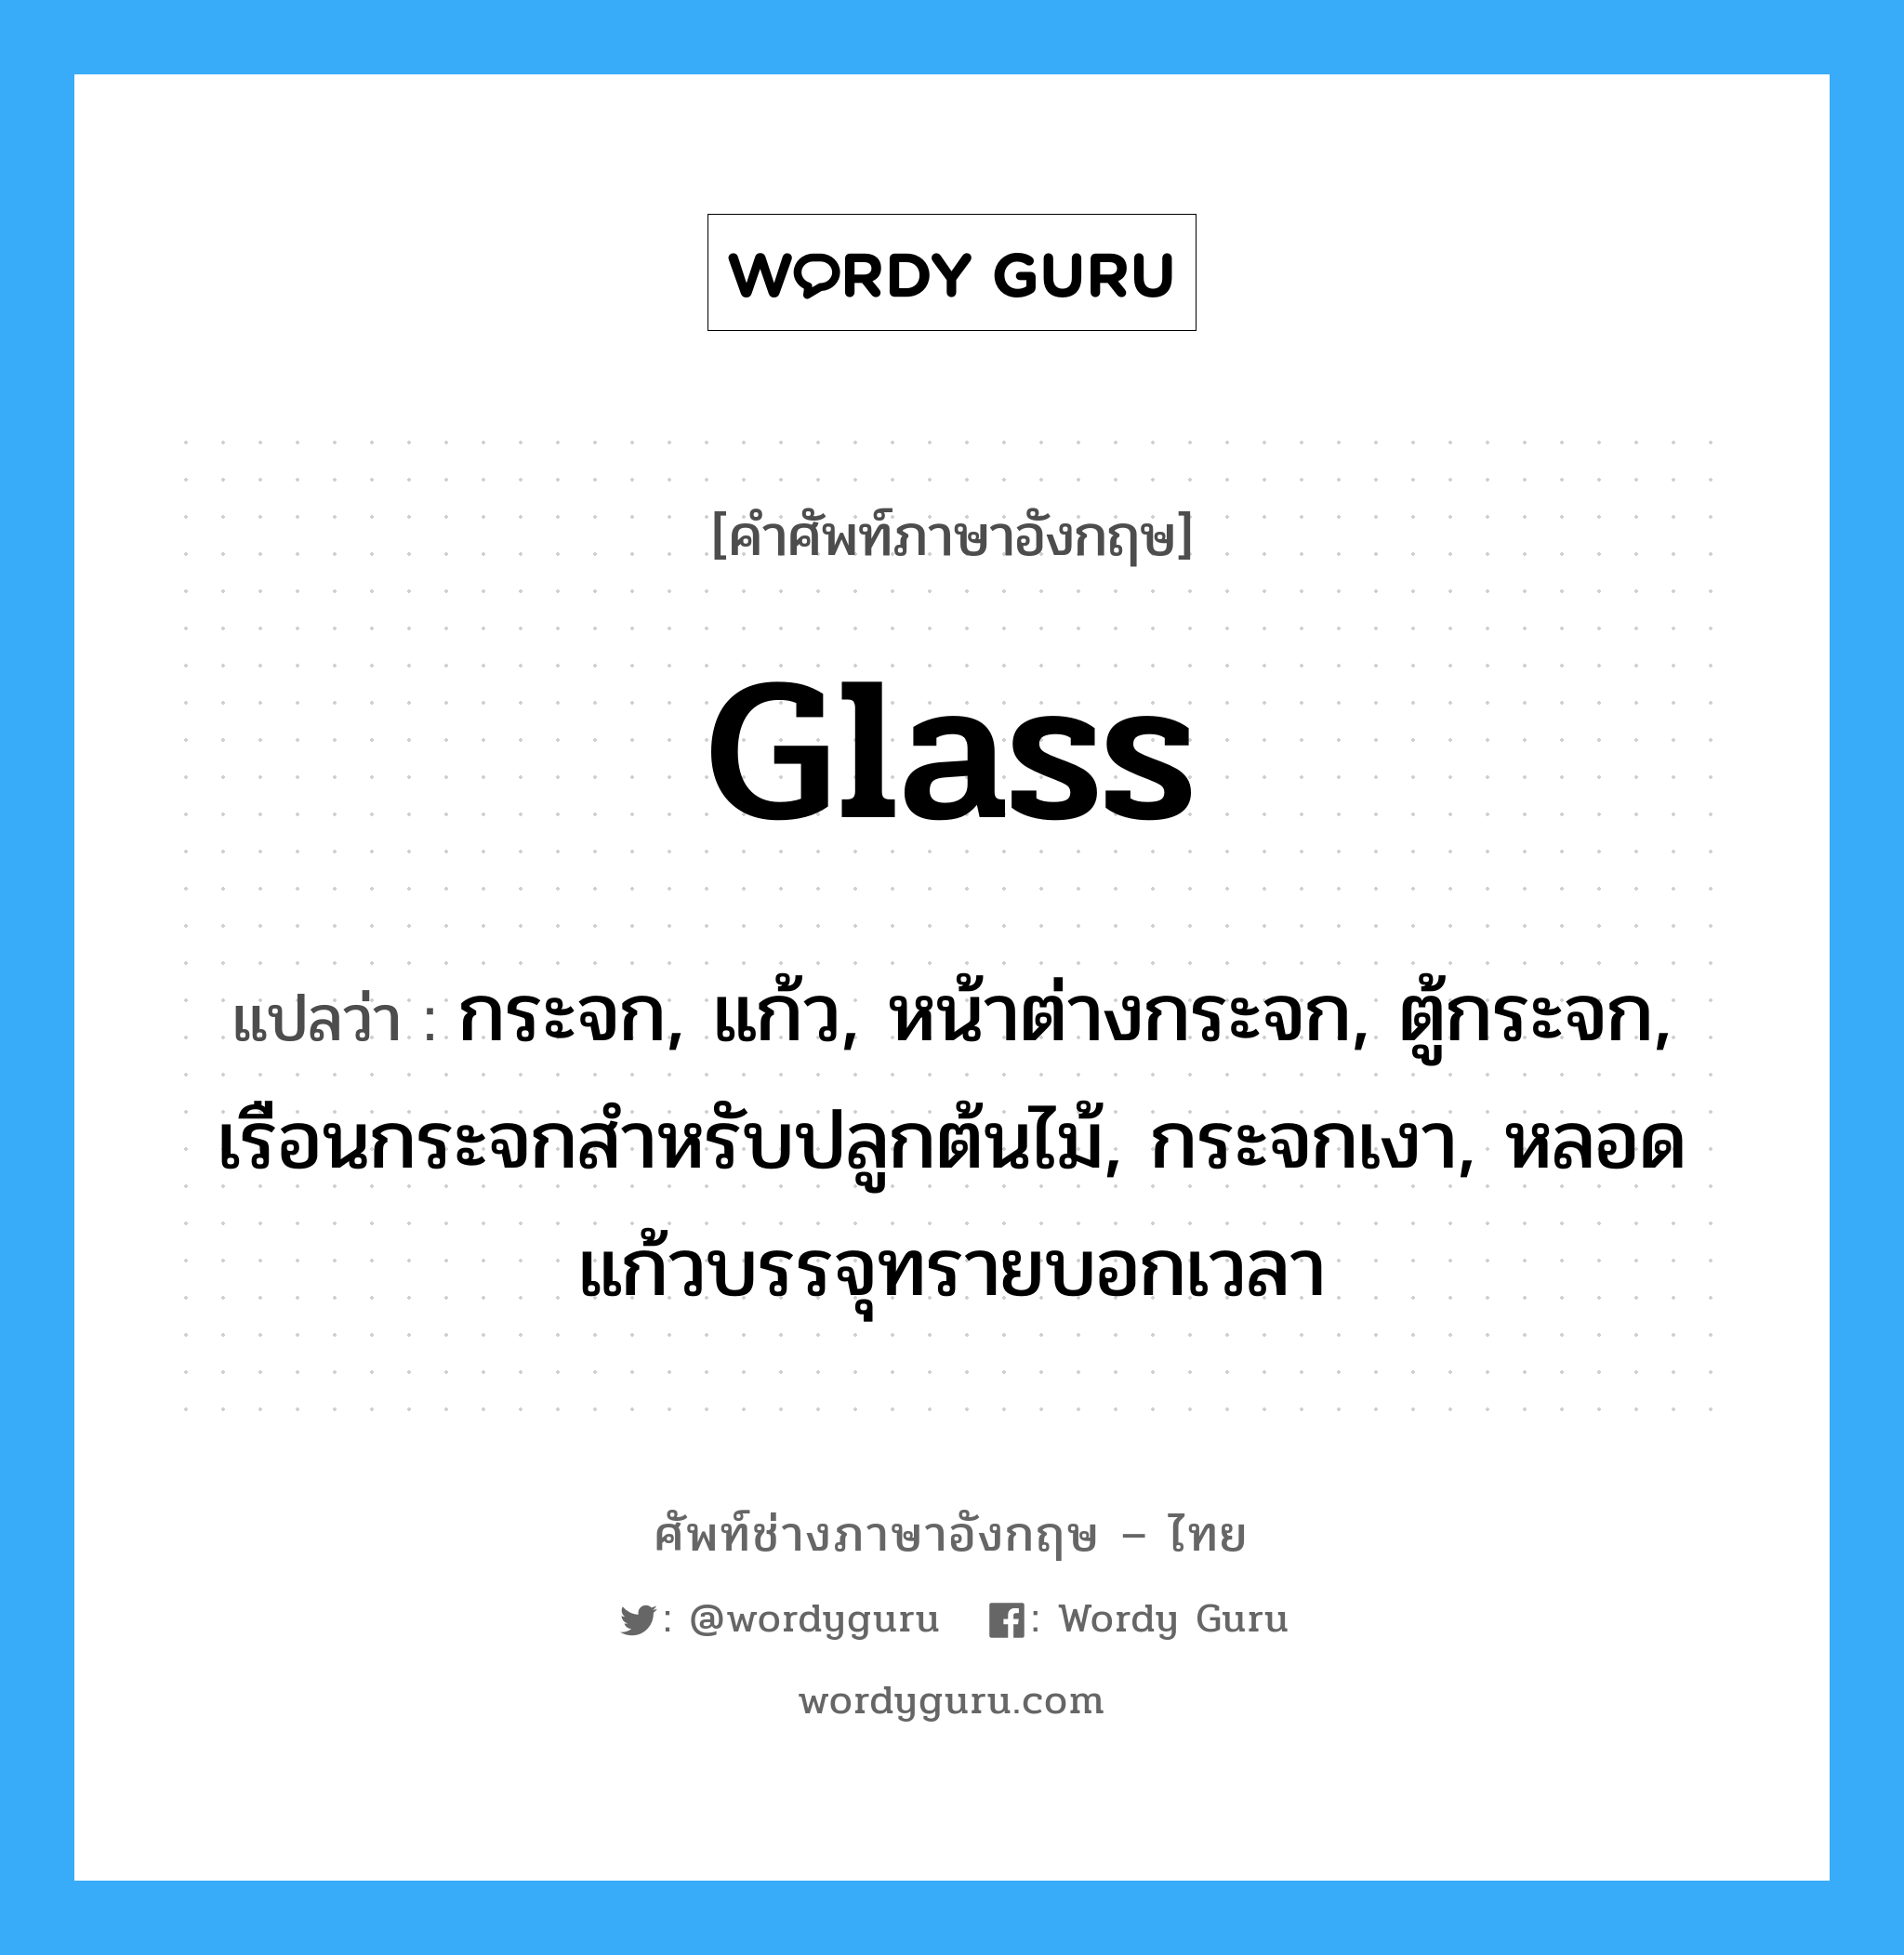 glass แปลว่า?, คำศัพท์ช่างภาษาอังกฤษ - ไทย glass คำศัพท์ภาษาอังกฤษ glass แปลว่า กระจก, แก้ว, หน้าต่างกระจก, ตู้กระจก, เรือนกระจกสำหรับปลูกต้นไม้, กระจกเงา, หลอดแก้วบรรจุทรายบอกเวลา